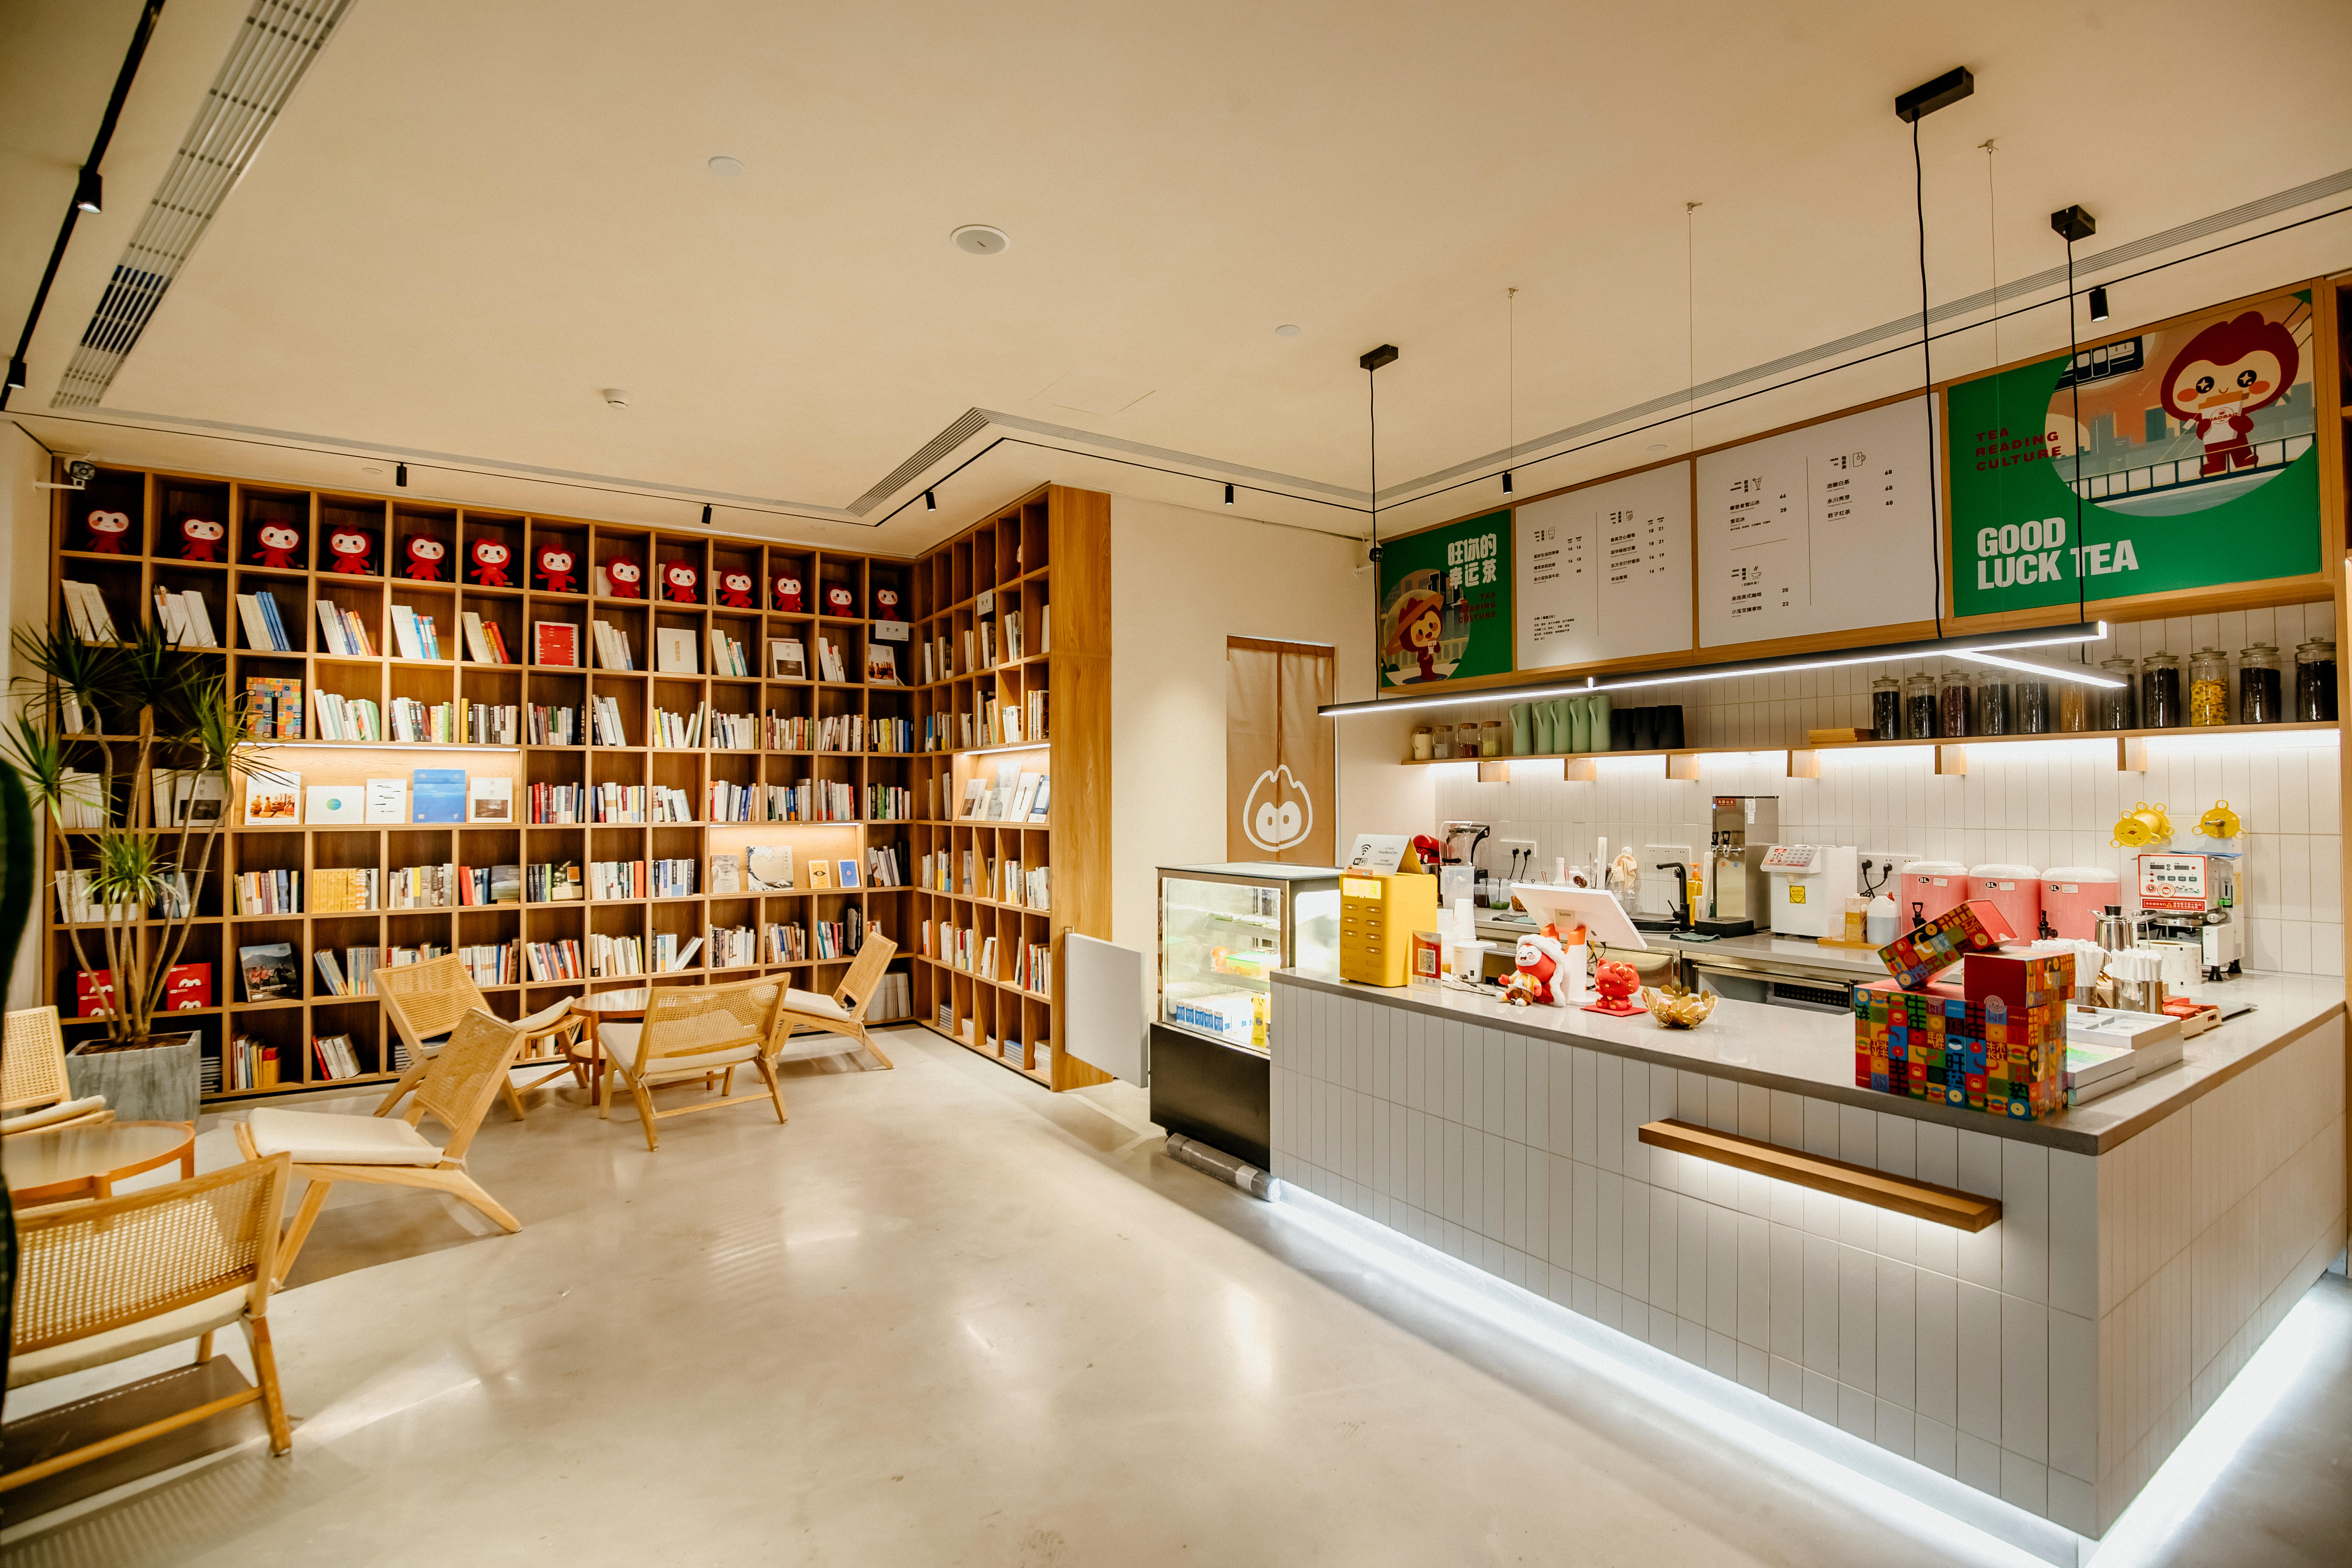 地产企业跨界做茶饮 金科做了一家“文创味”的奶茶店